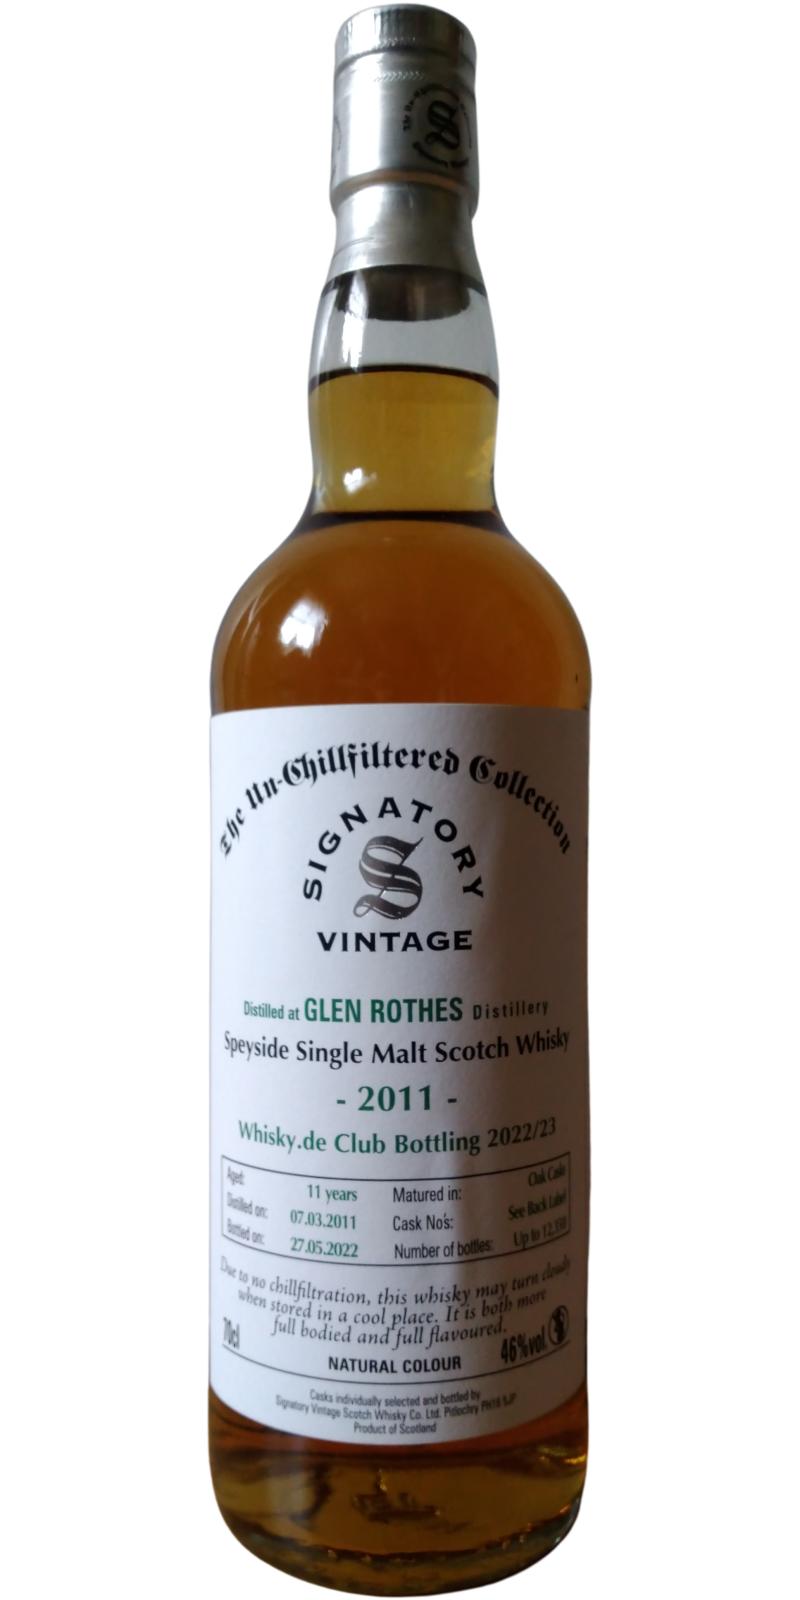 Glenrothes 2011 SV Whisky.de Club Bottling 2022 23 46% 700ml